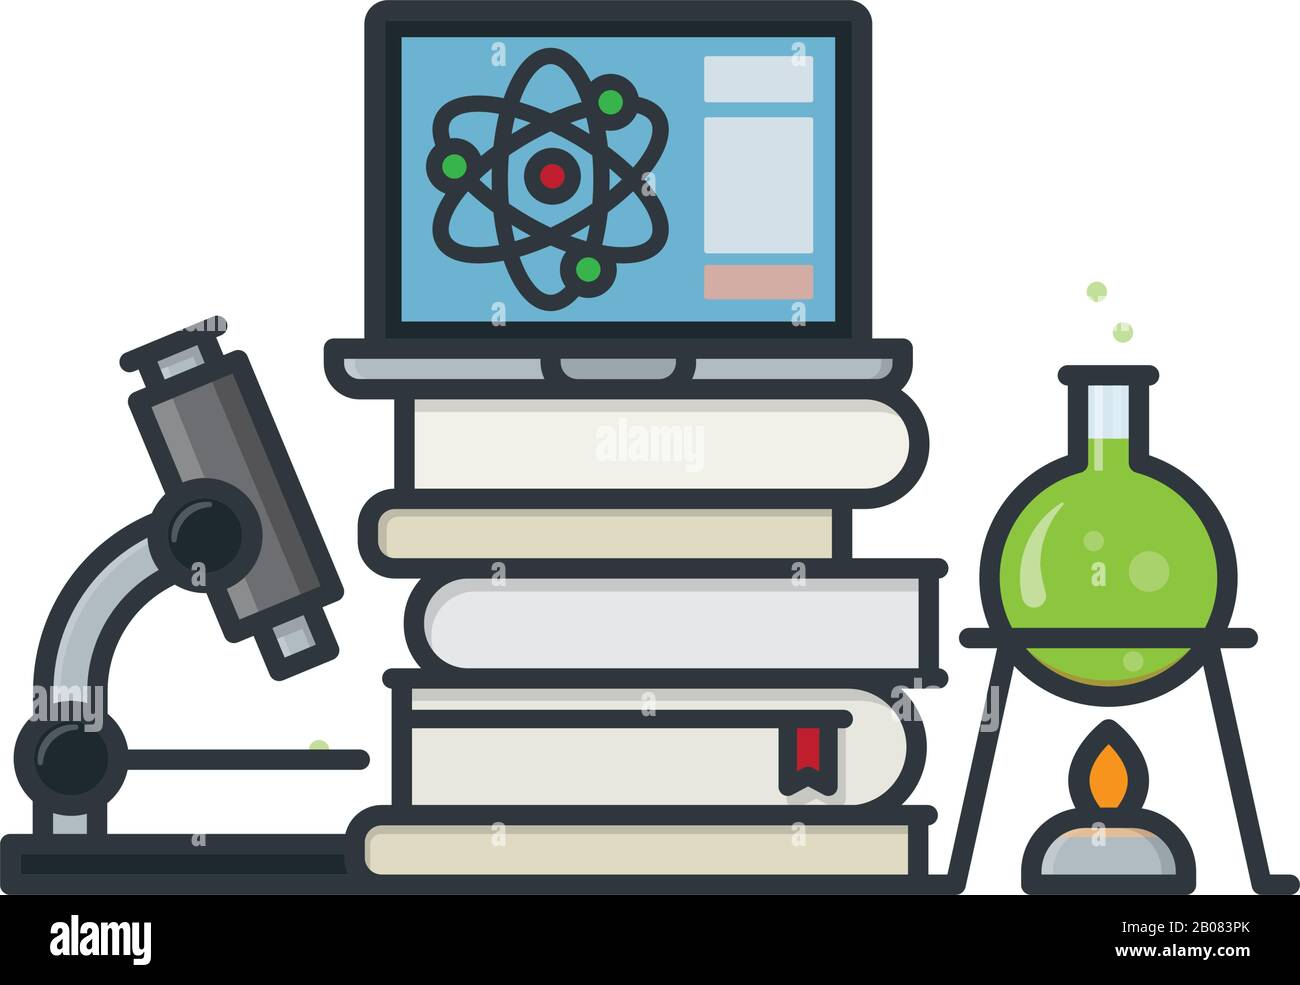 Wissenschaftliche Ausrüstung, Bücher und Laptop isolierte Vektorgrafiken für den Science Education Day am 14. März. Stock Vektor